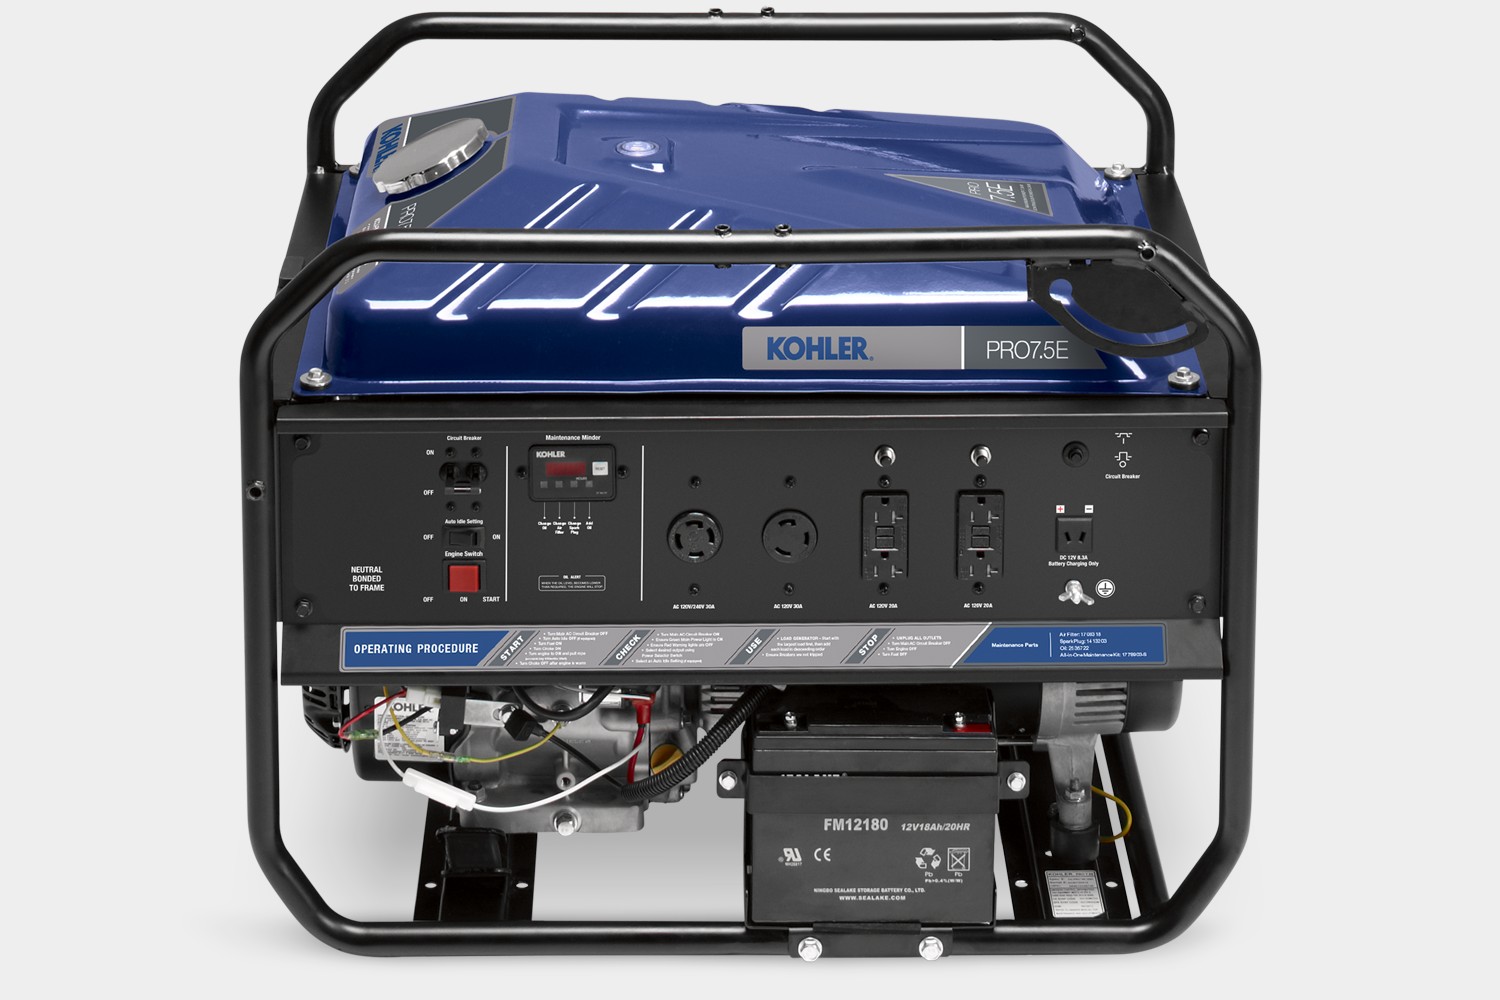 Kohler Pro7.5e portable generator